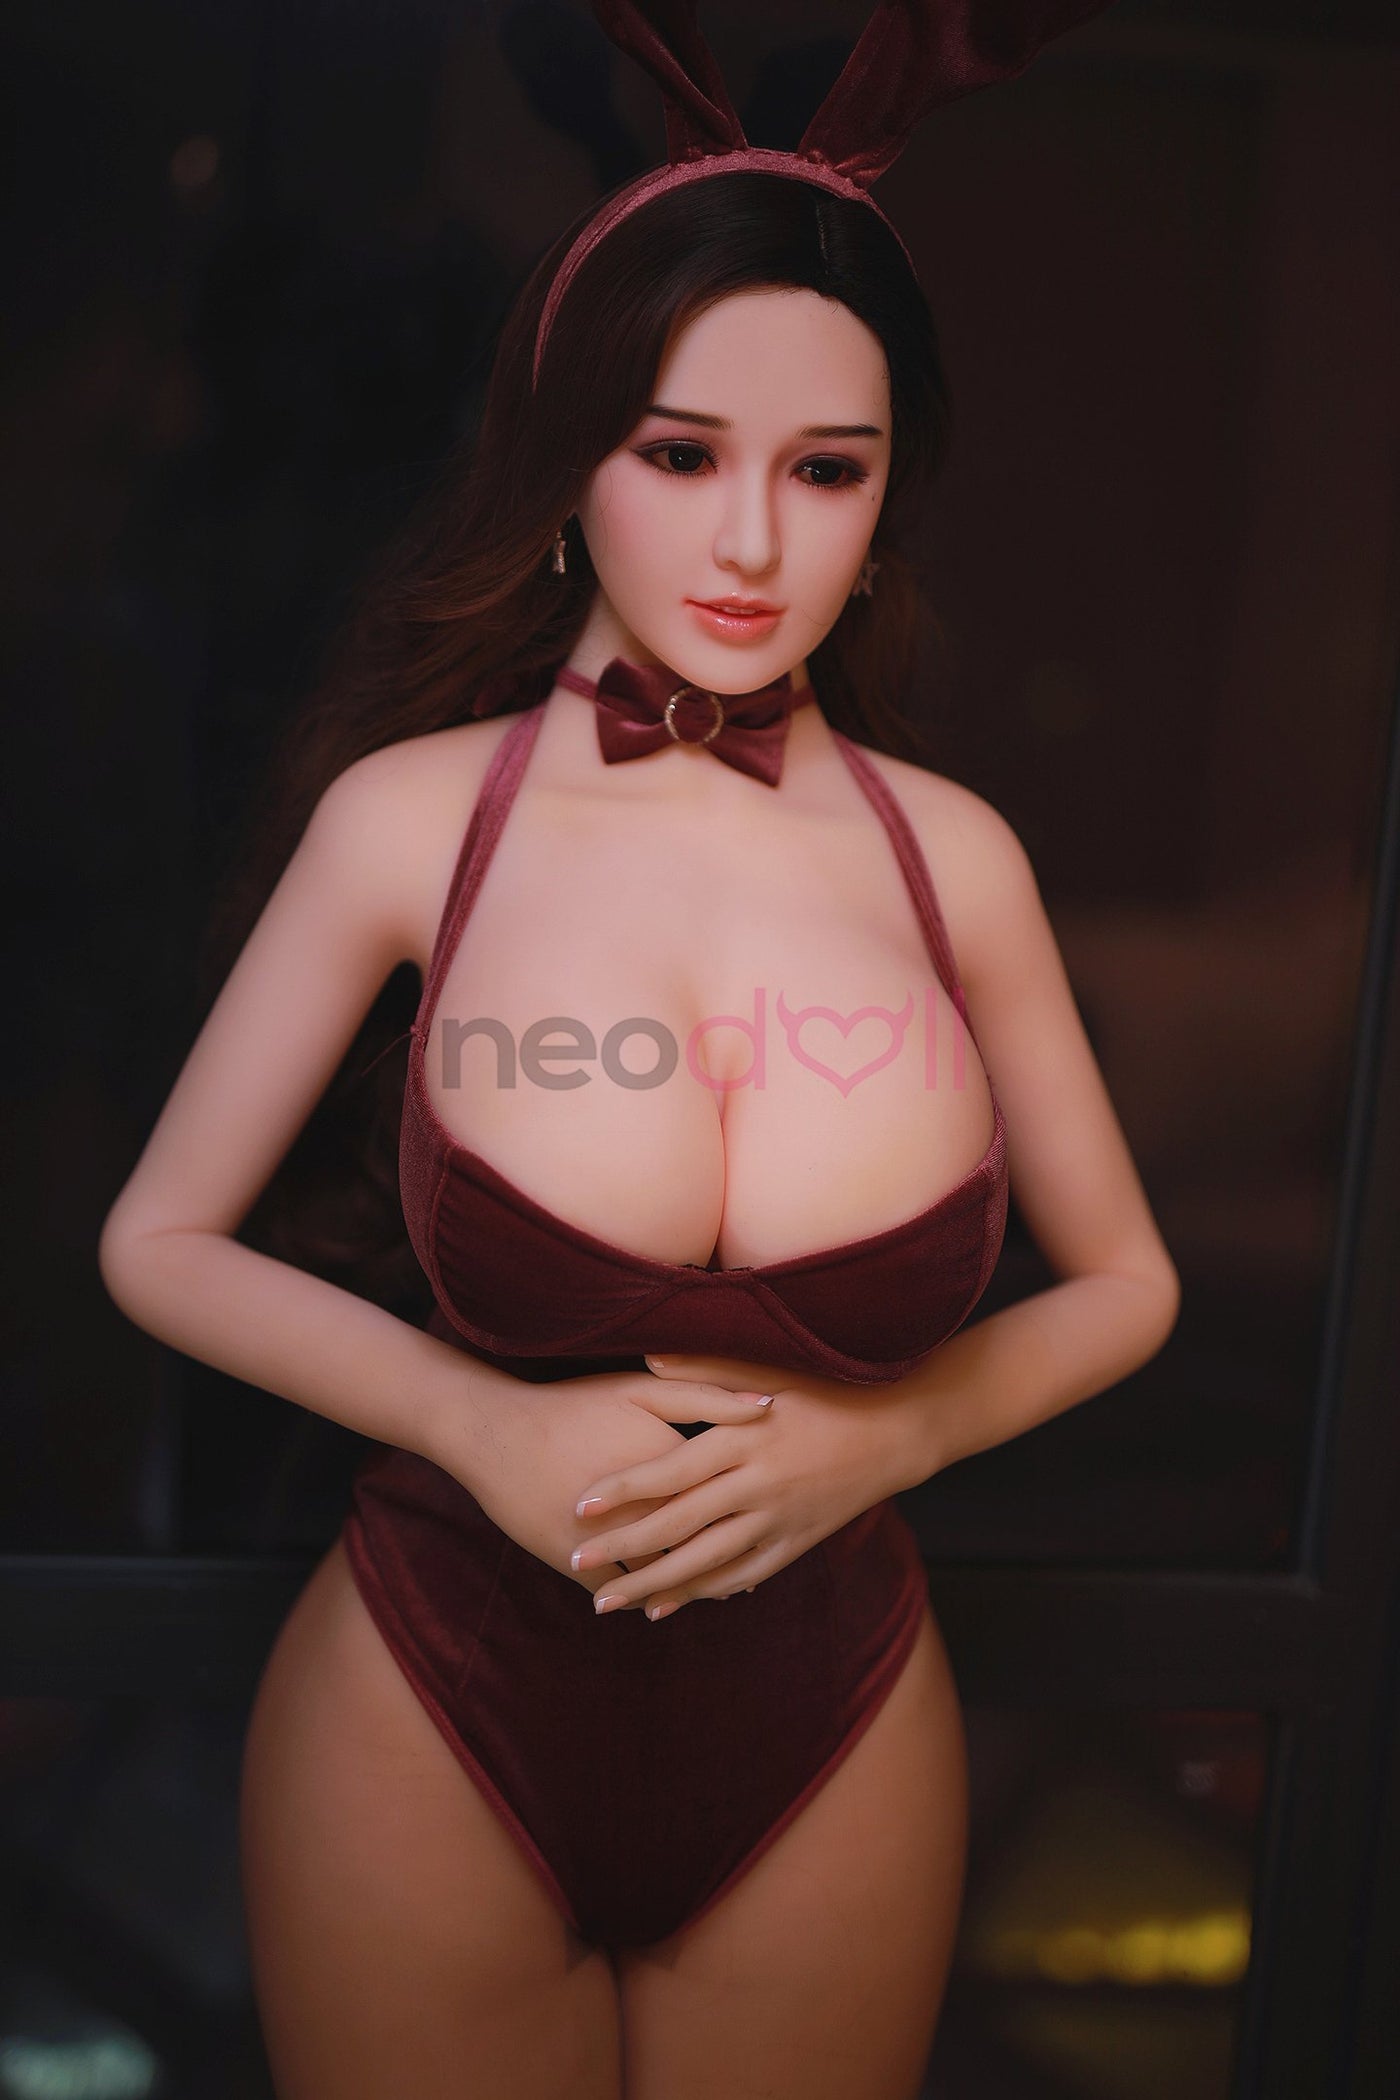 Neodoll Sugar Babe - Skylar - Realistic Sex Doll - 170cm - Silicone White